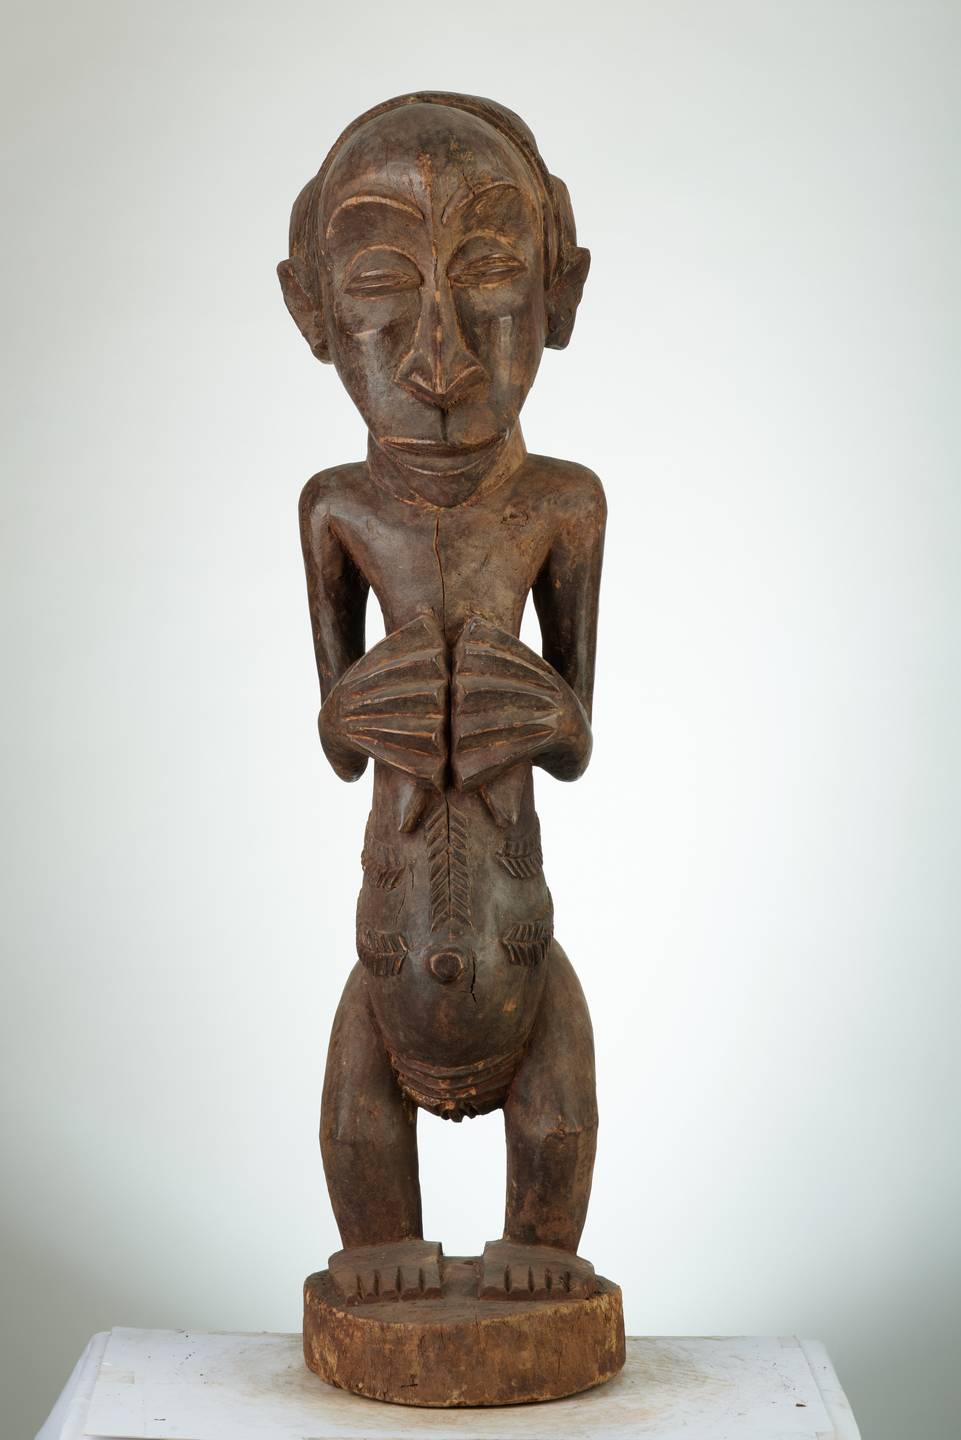 Hemba(statue)n°1989, d`afrique : R.D.C., statuette Hemba(statue)n°1989, masque ancien africain Hemba(statue)n°1989, art du R.D.C. - Art Africain, collection privées Belgique. Statue africaine de la tribu des Hemba(statue)n°1989, provenant du R.D.C., 1989:Statue Hemba d